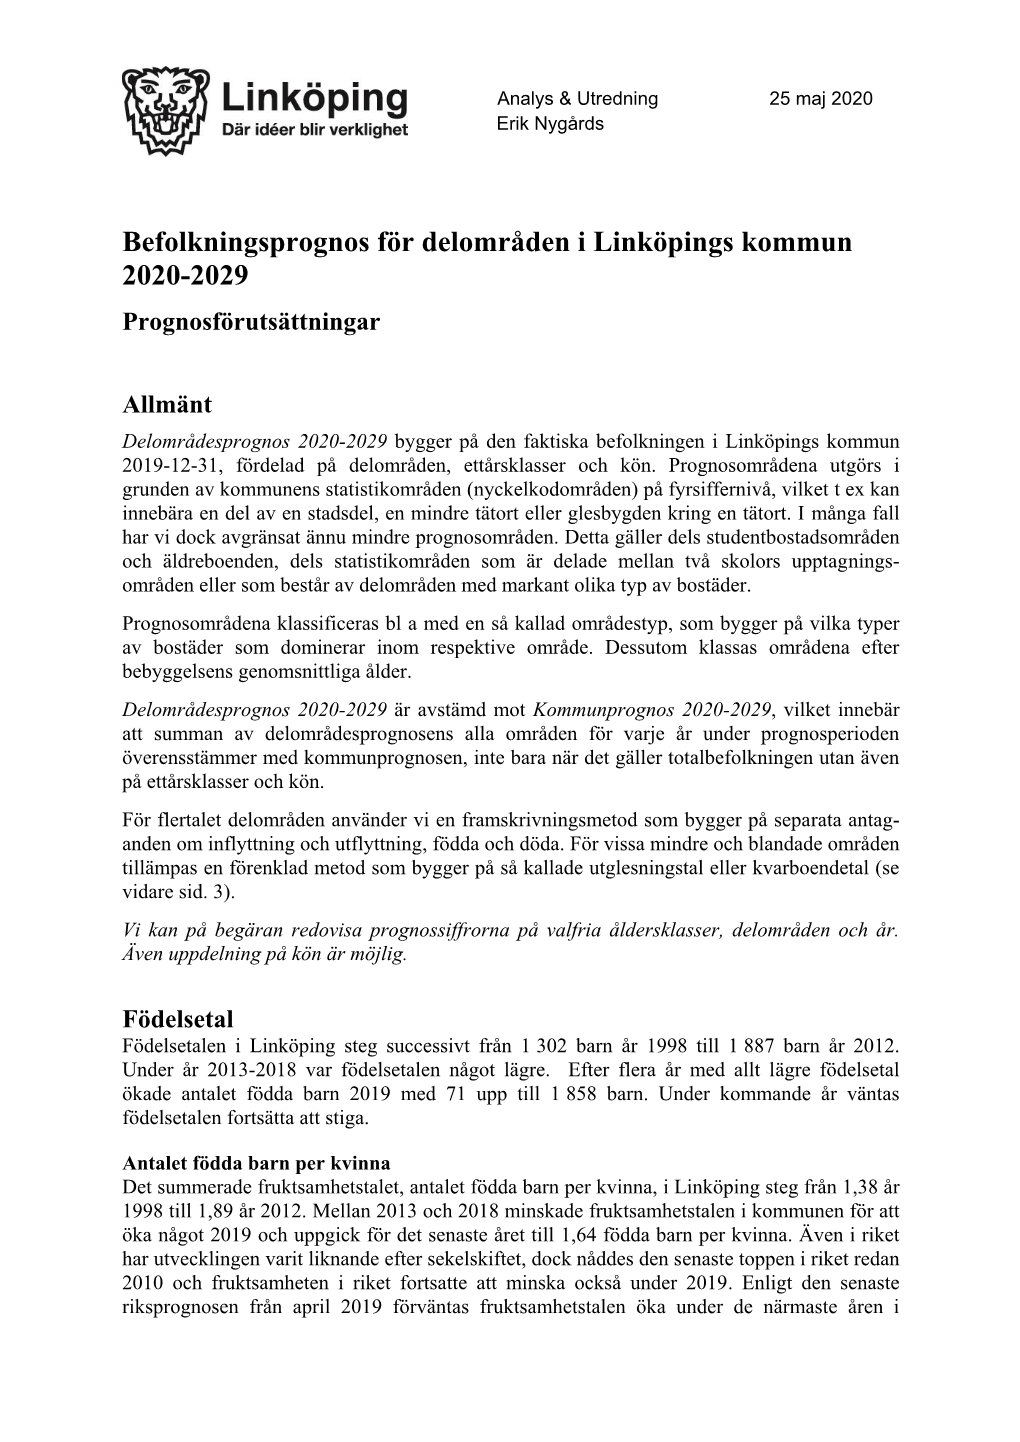 Befolkningsprognos För Delområden I Linköpings Kommun 2020-2029 Prognosförutsättningar